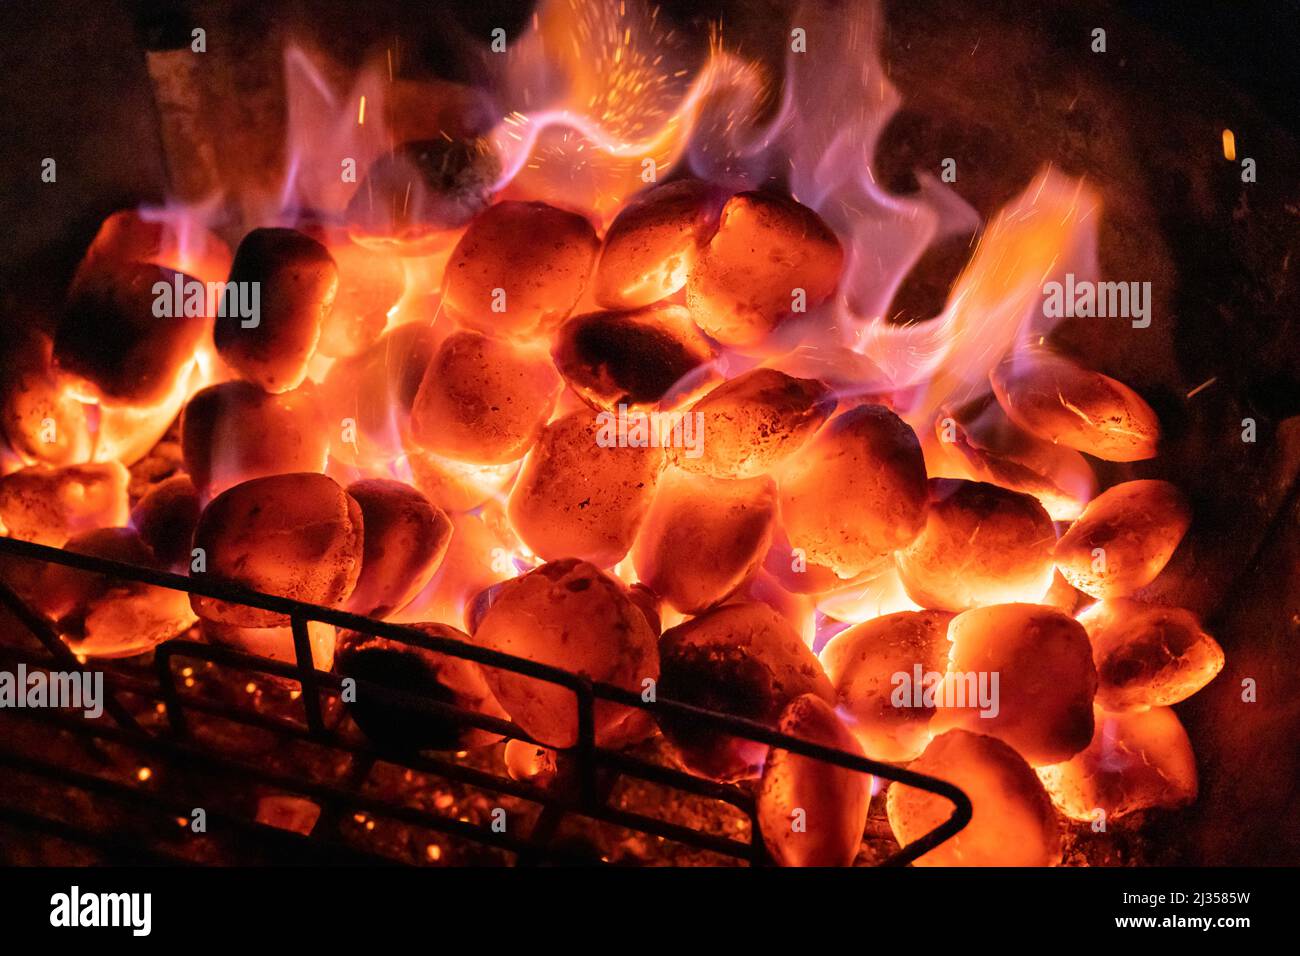 La sera, cale calde su un barbecue con una griglia in mostra. Concetto: Barbecue, barbecue, barbecue, calore, barbecue, carboni caldi, carboni brucianti, calore, combustibile Foto Stock